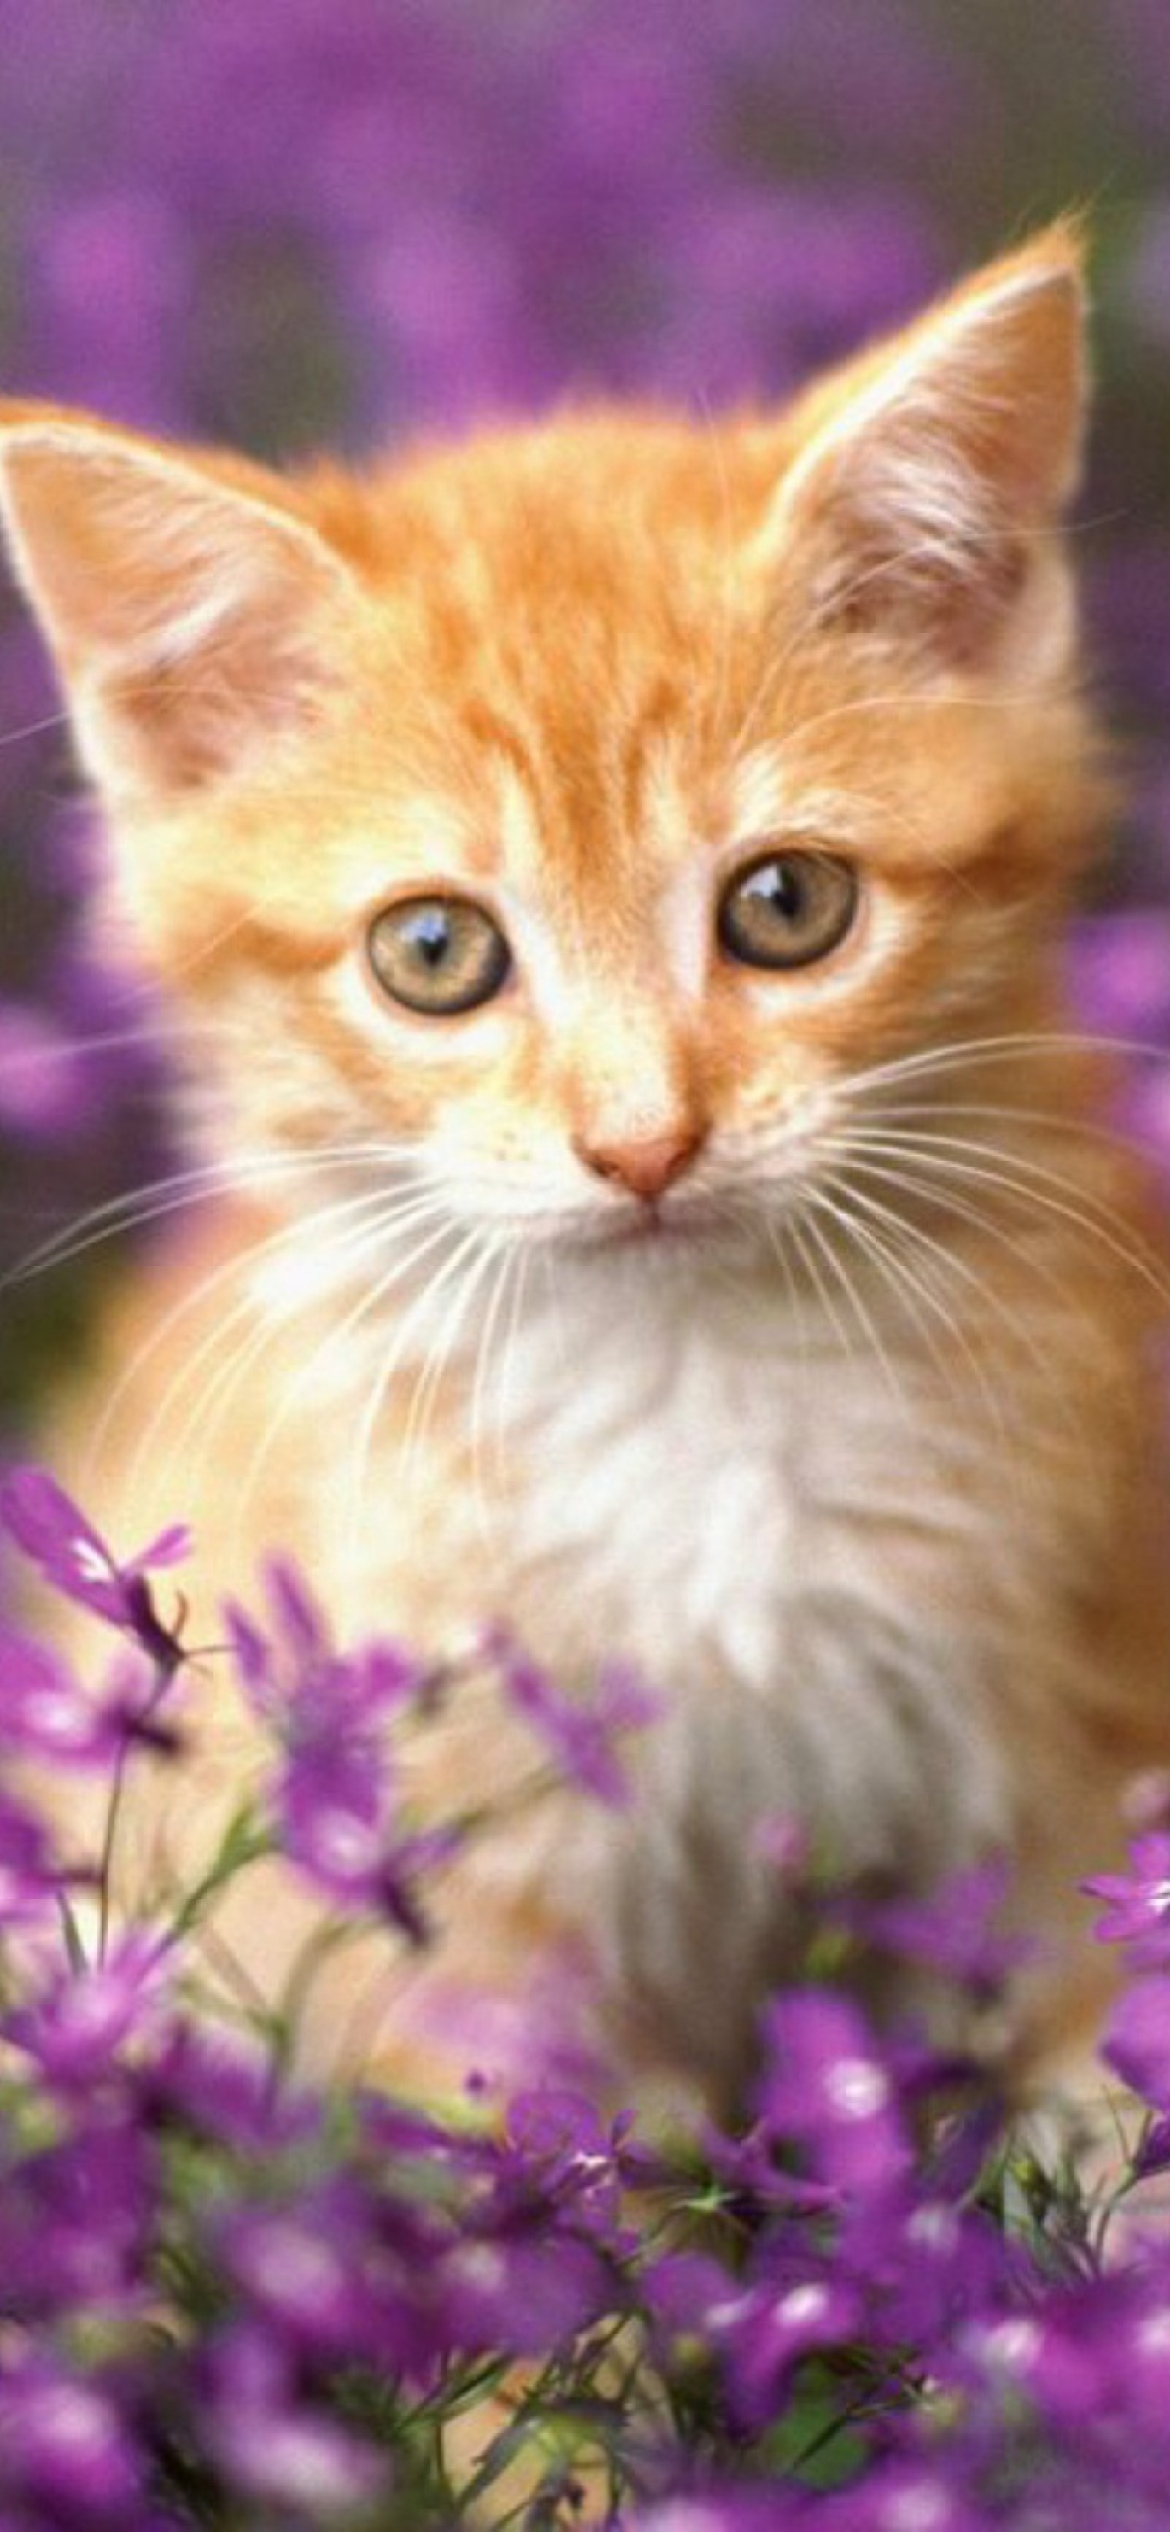 Das Sweet Kitten In Flower Field Wallpaper 1170x2532